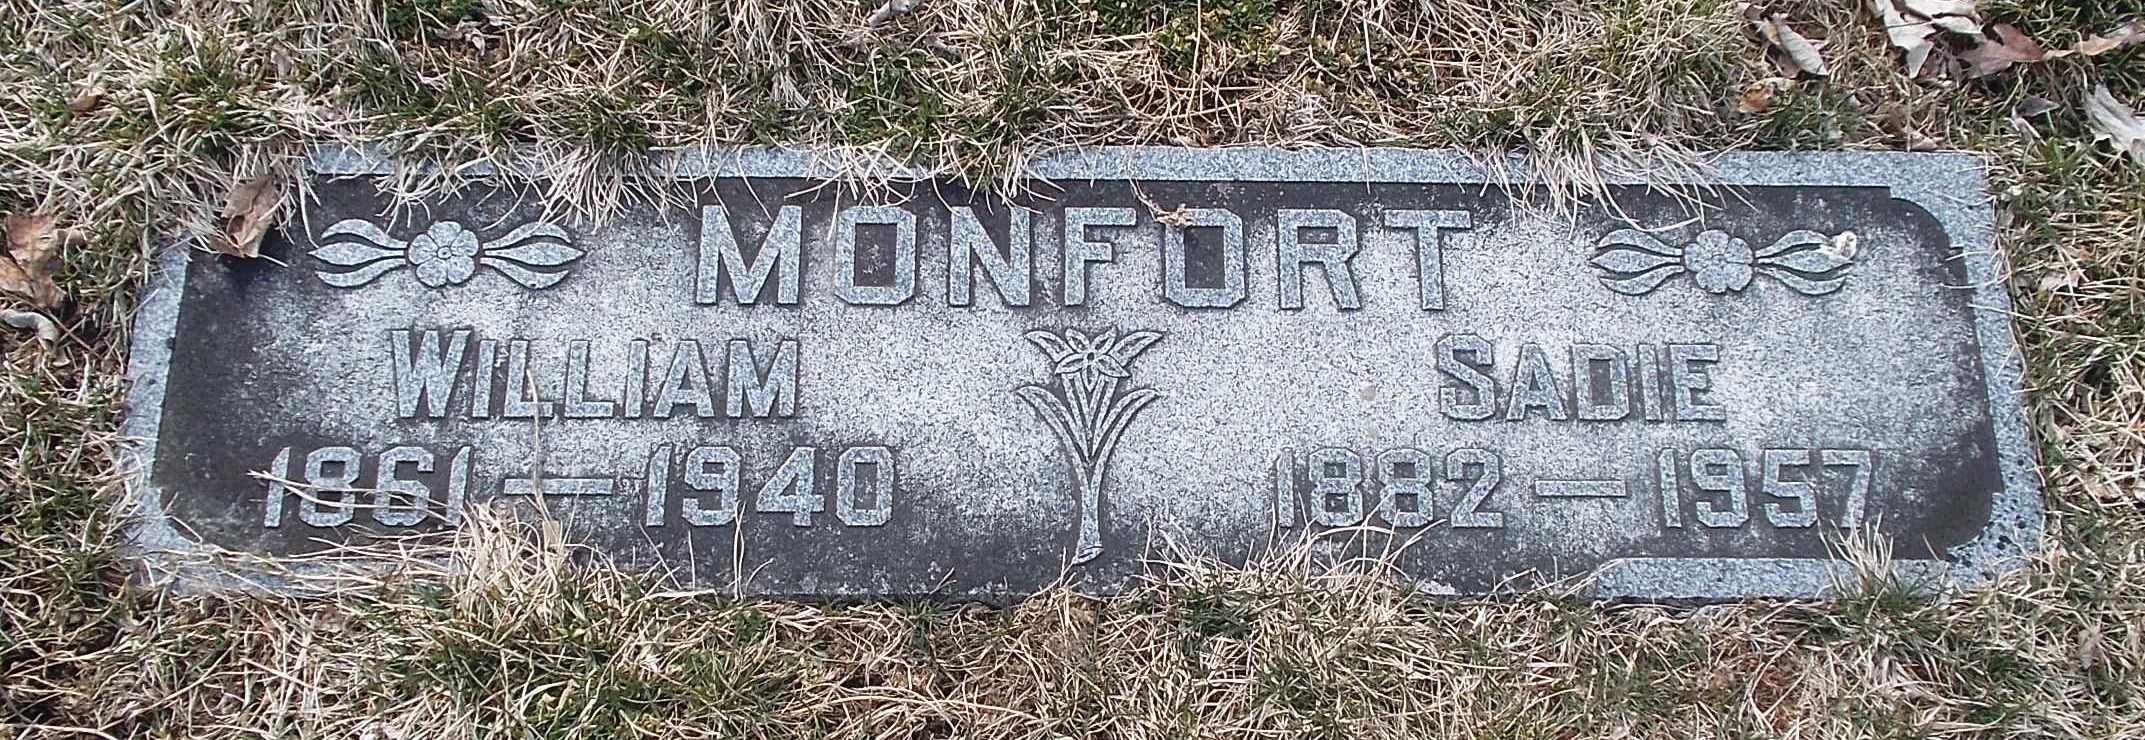 William Monfort